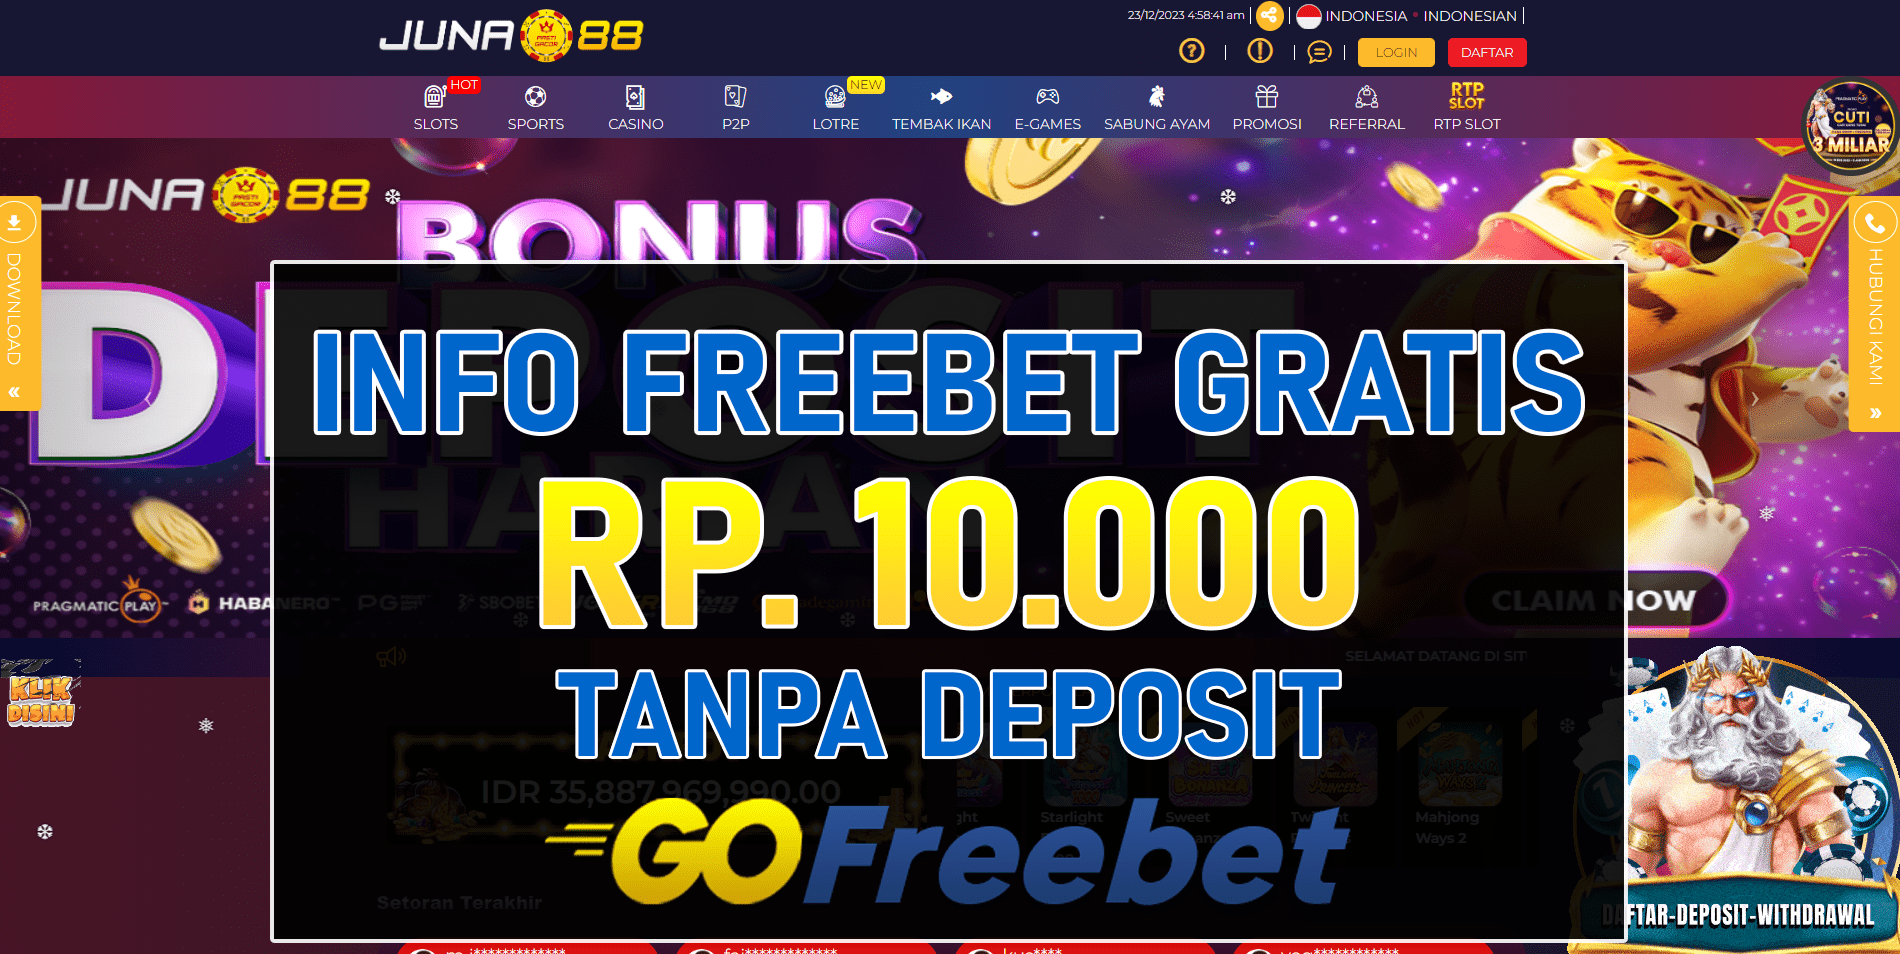 Juna88 Freebet Gratis Rp 10.000 Tanpa Deposit